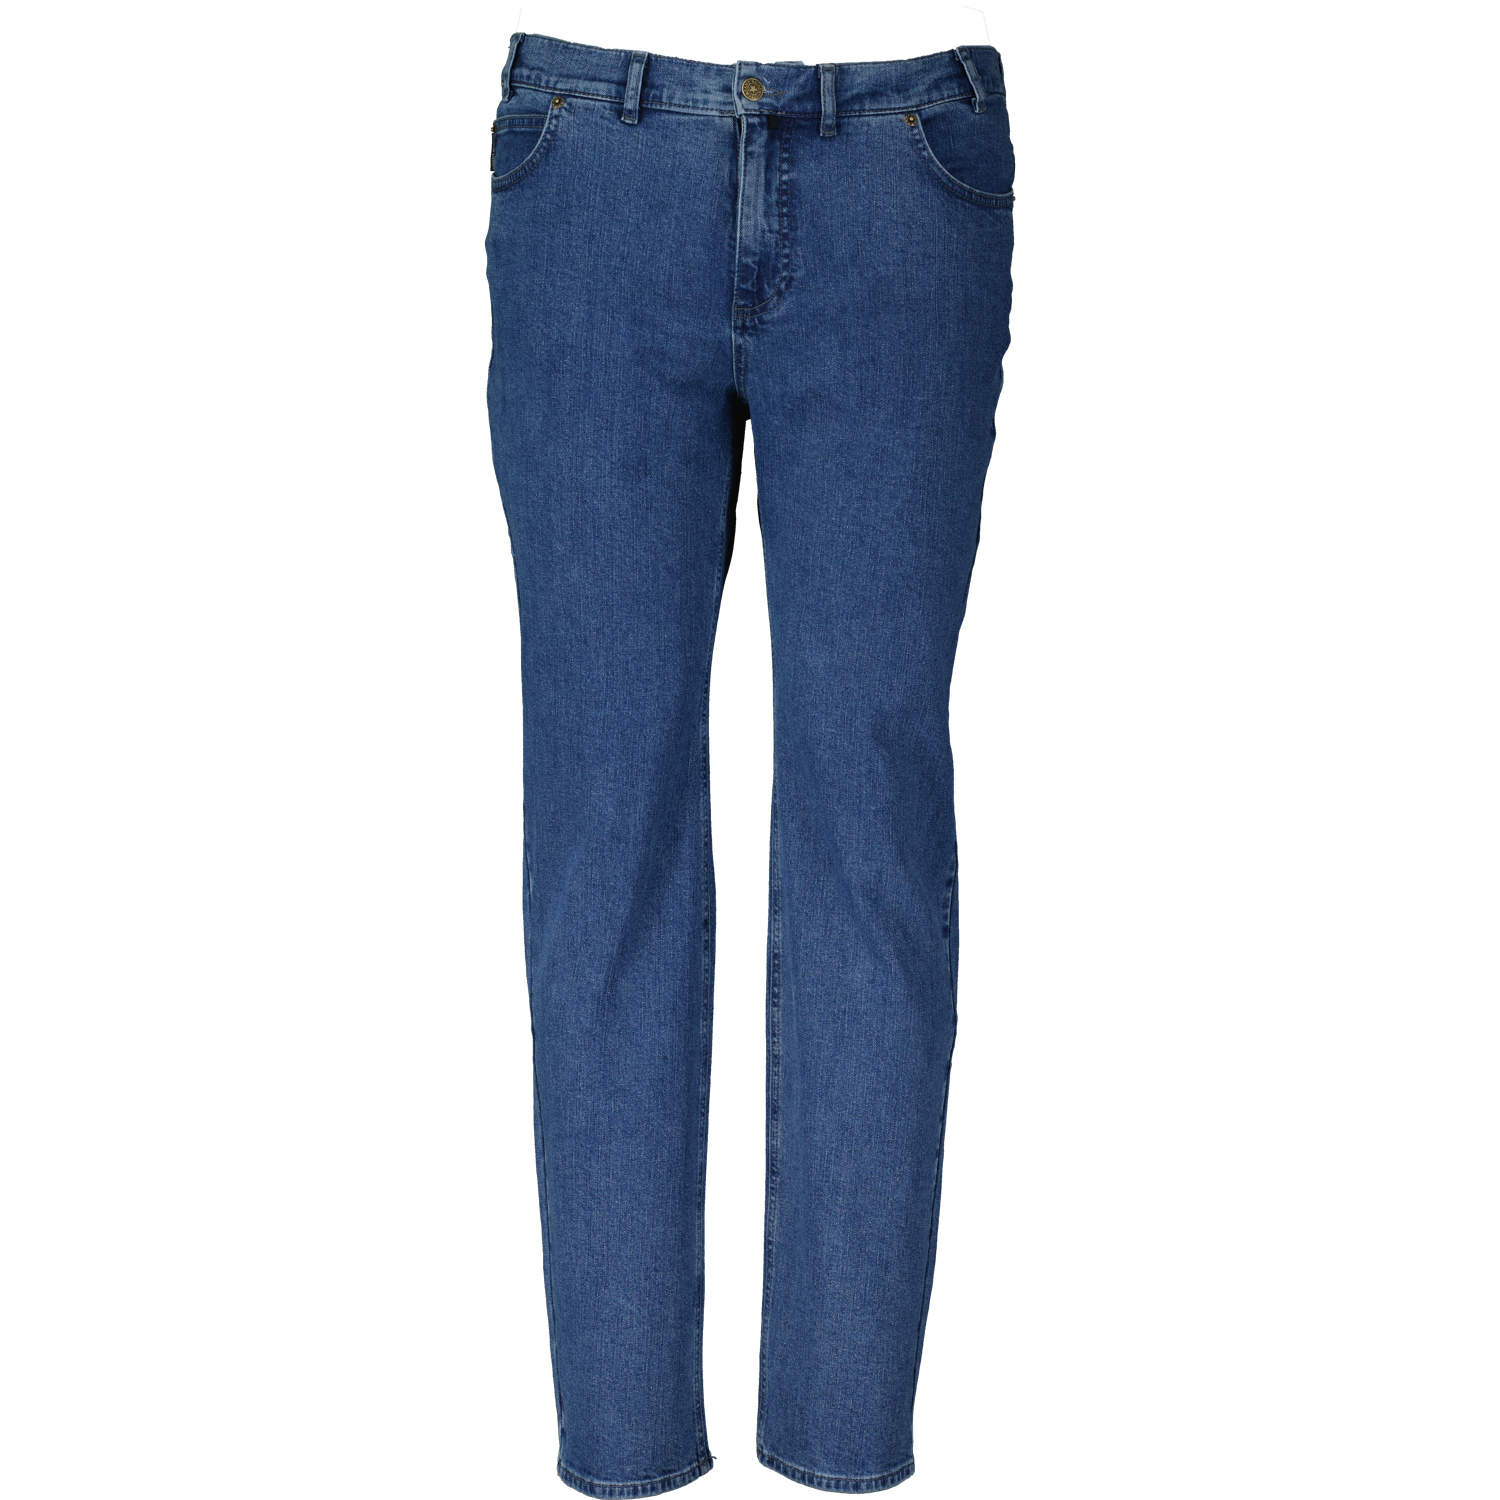 5-Pocket Jeans homme avec stretch série "OHIO" bleu moyen by Adamo grandes tailles (Taille haute): 59 - 85